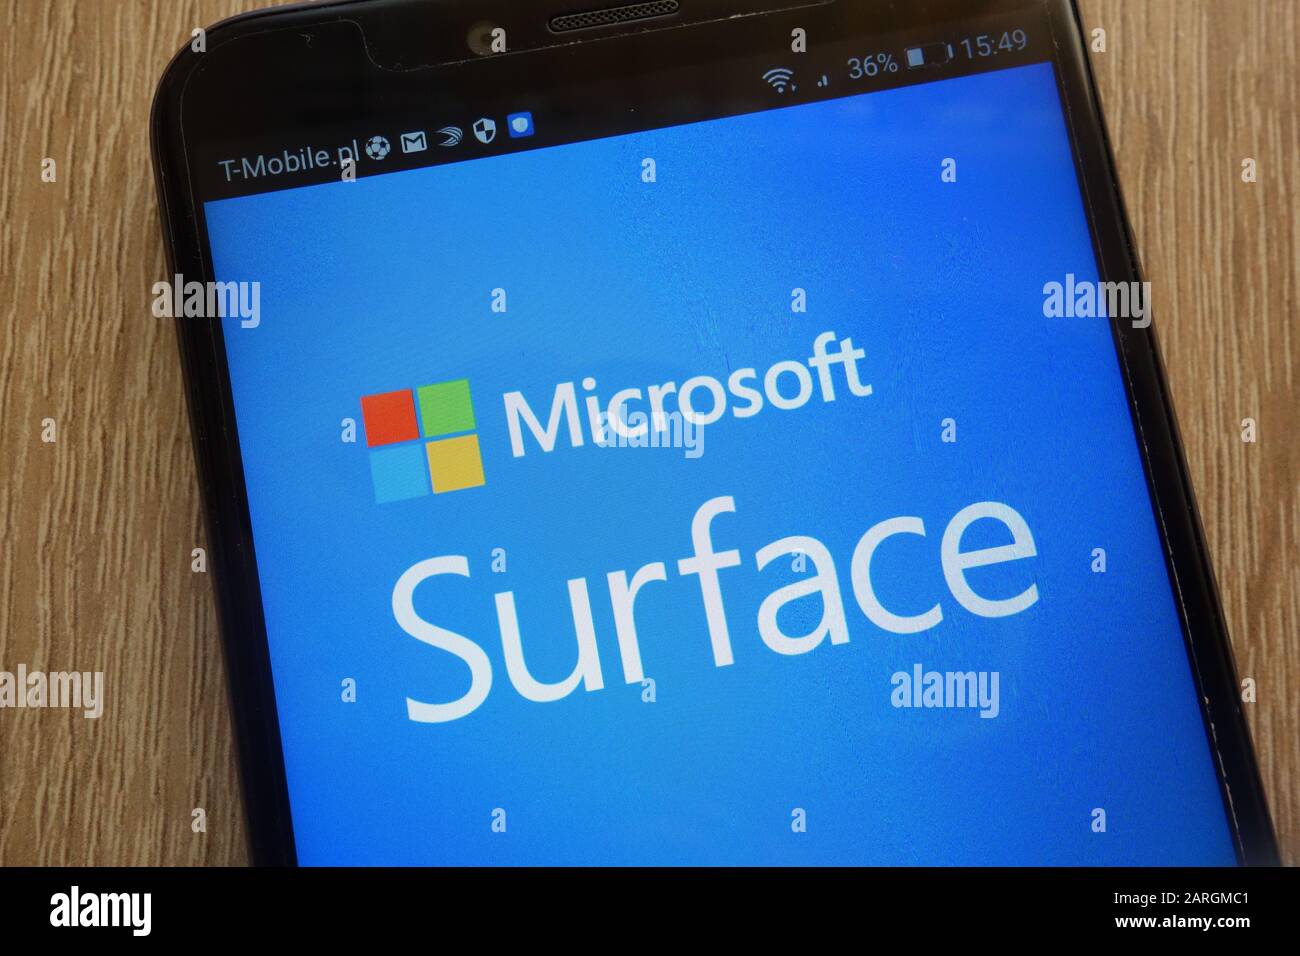 Logo Microsoft Surface visualizzato su uno smartphone moderno Foto Stock